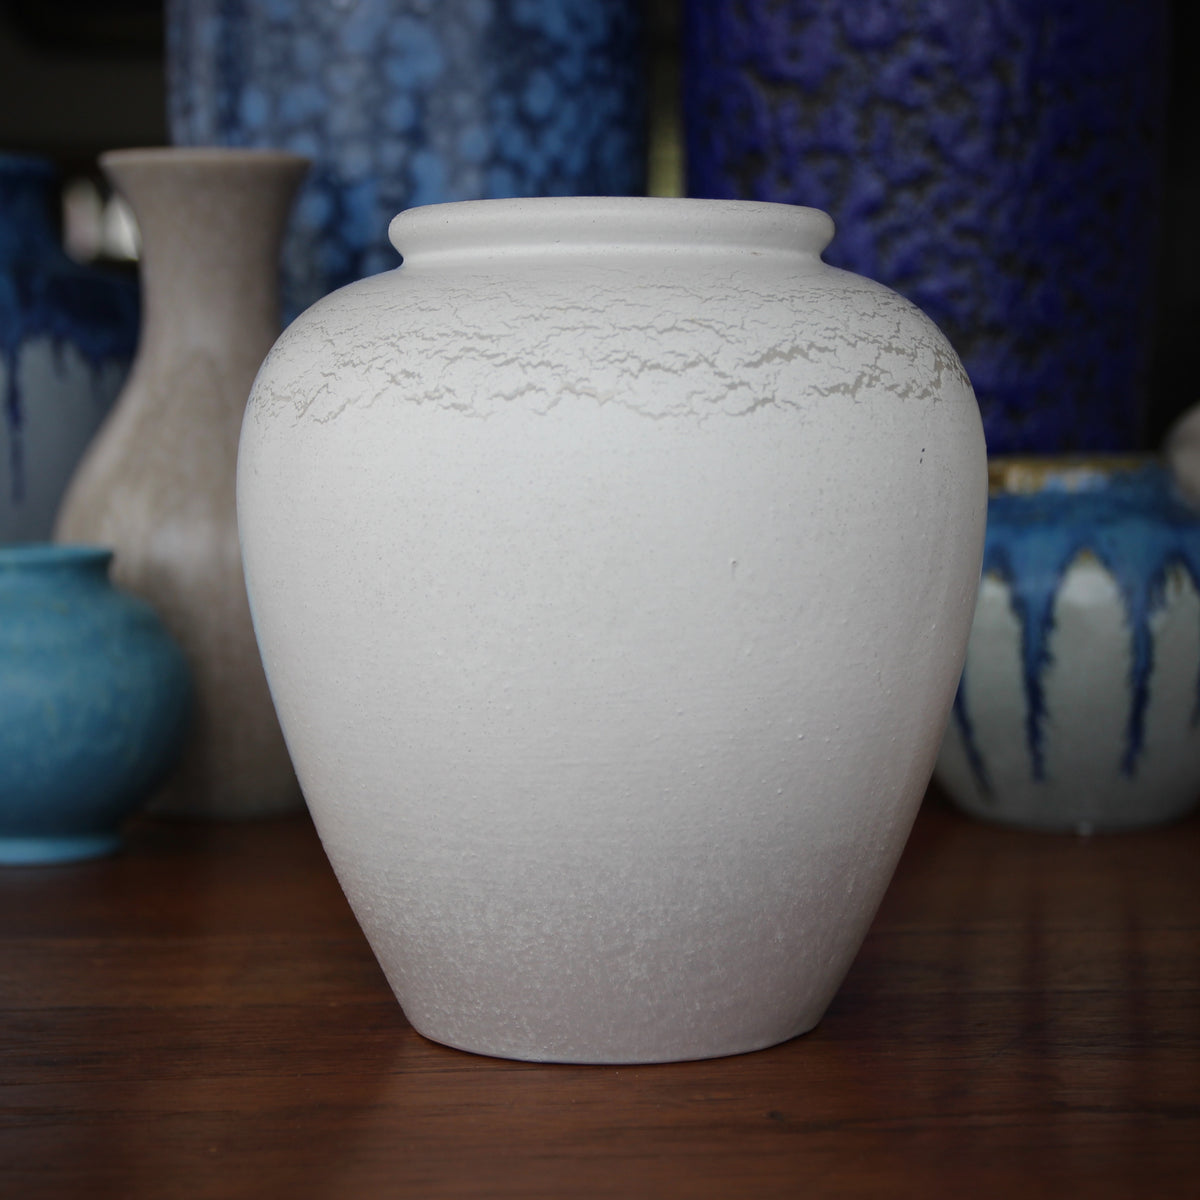 Modernist Vase with Curdled Glaze